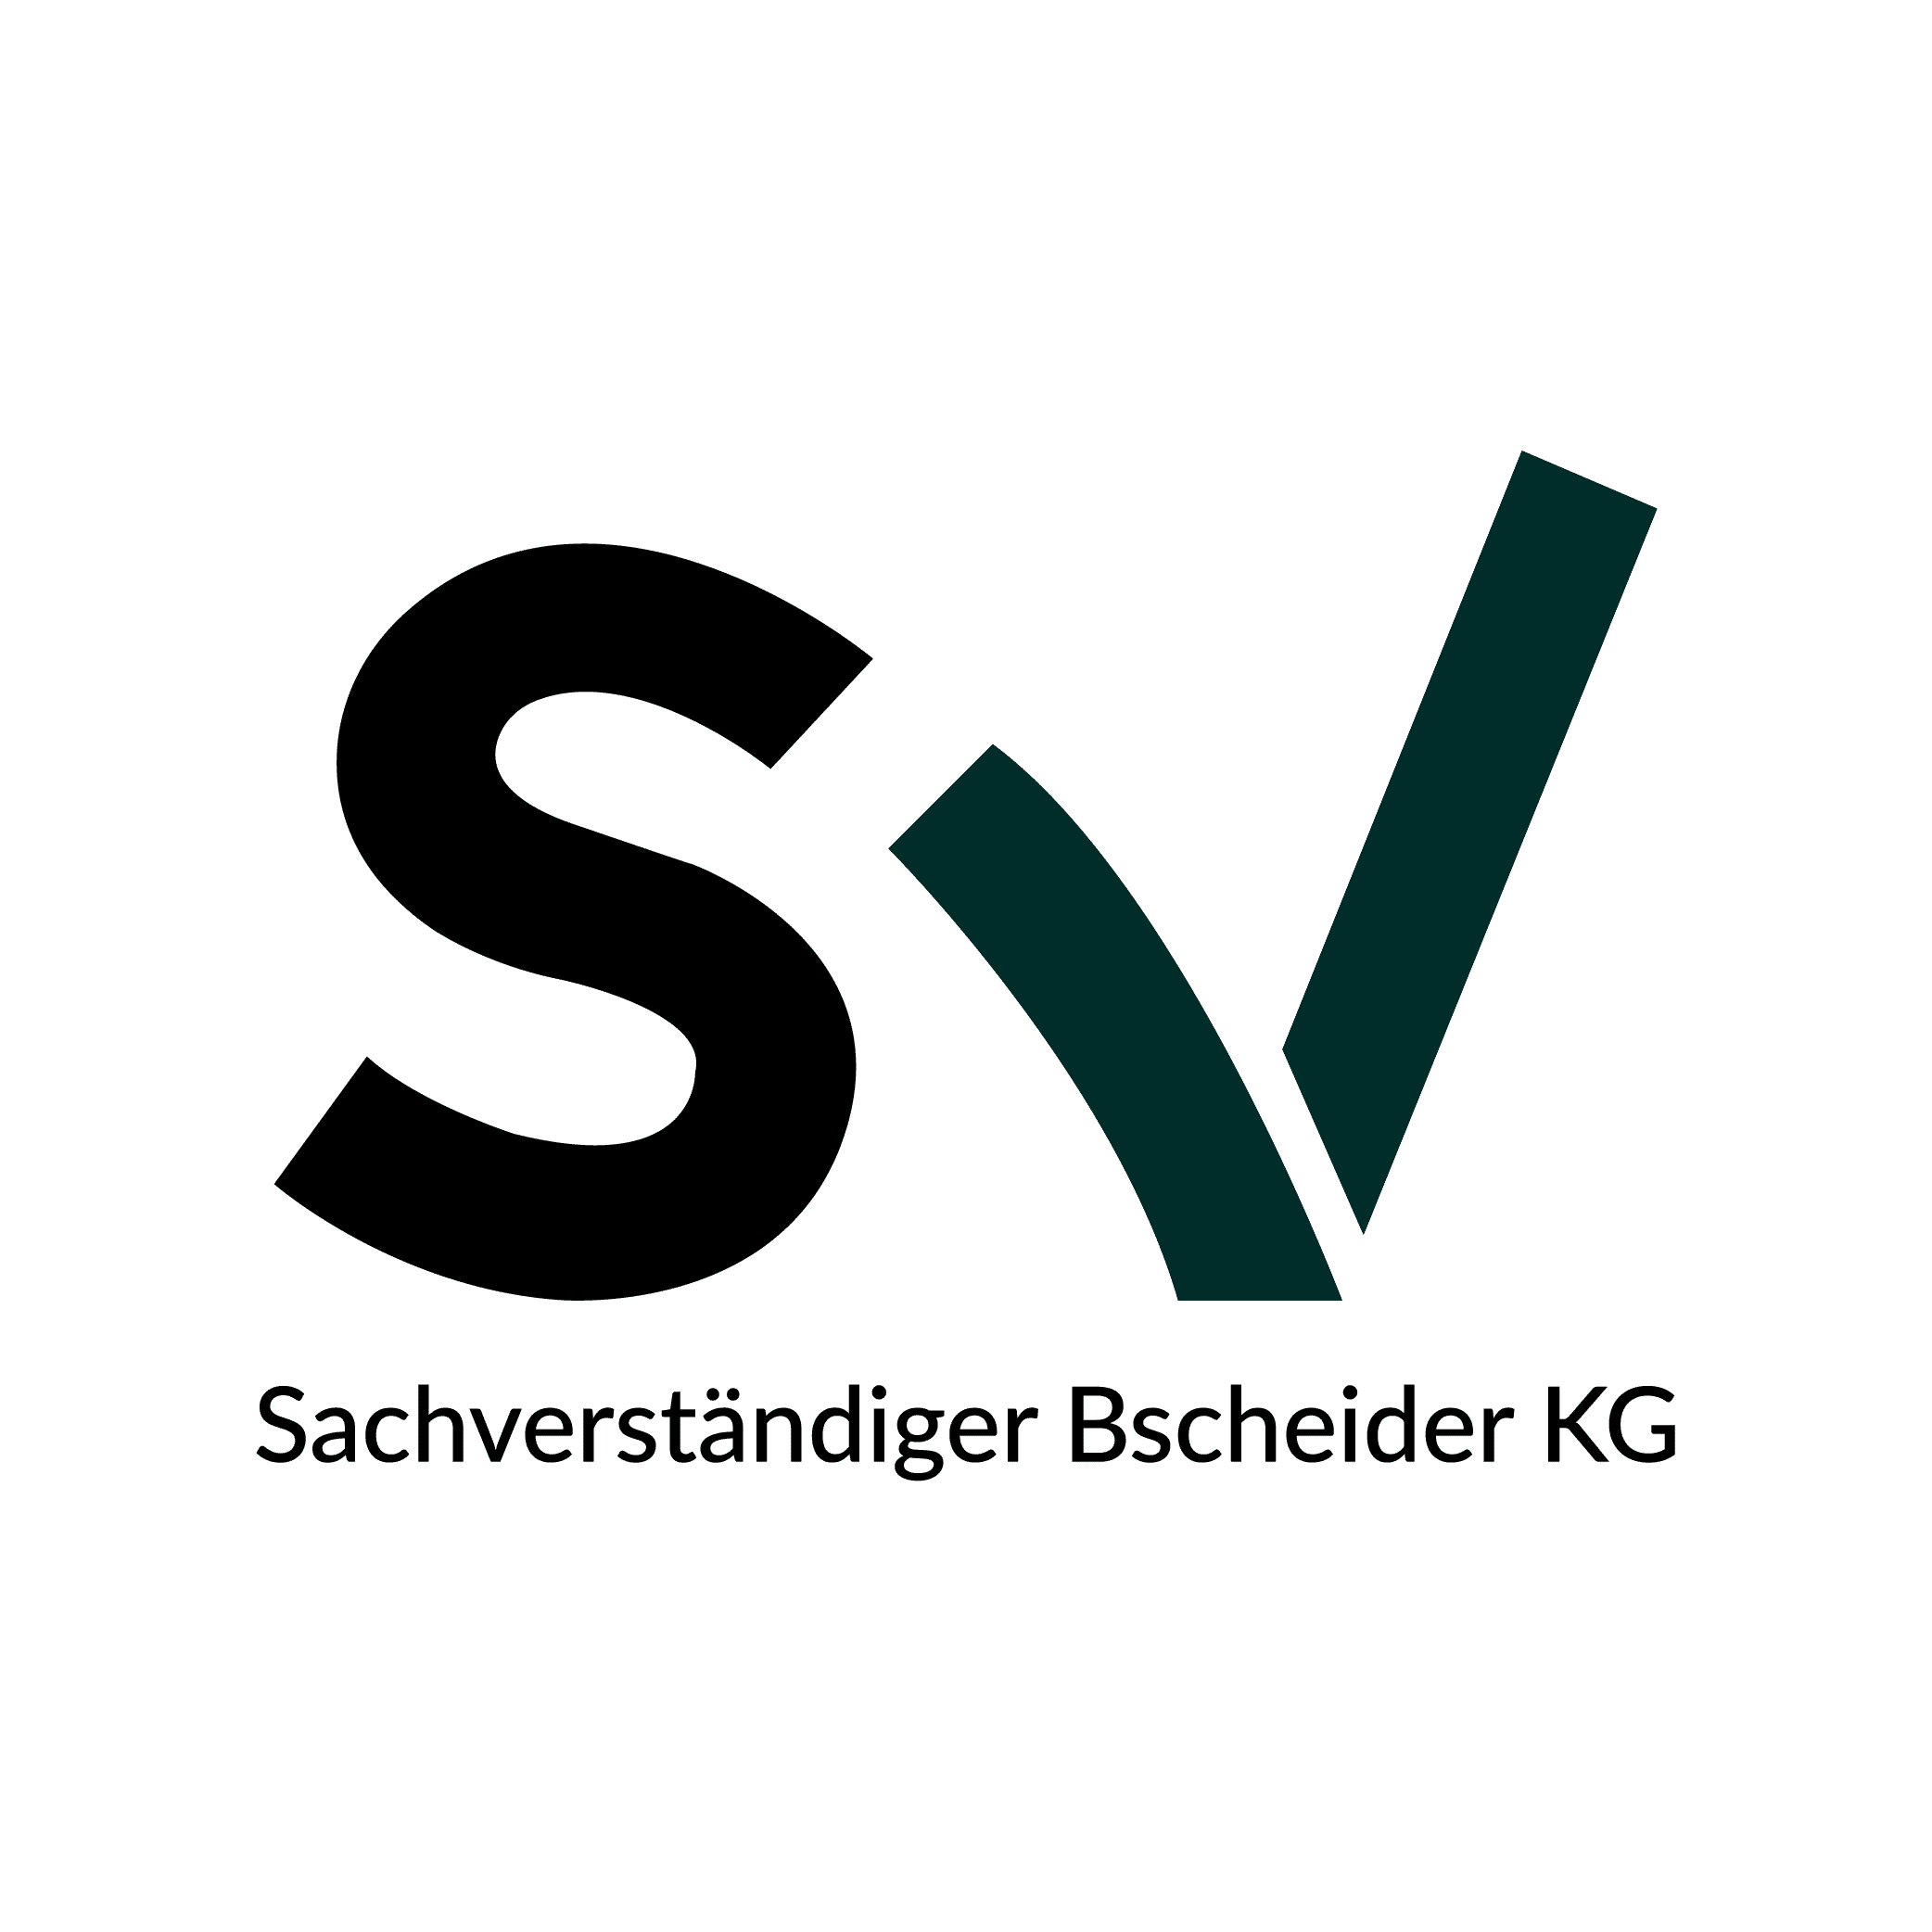 Bscheider-Logo_Zeichenflaeche-1.png